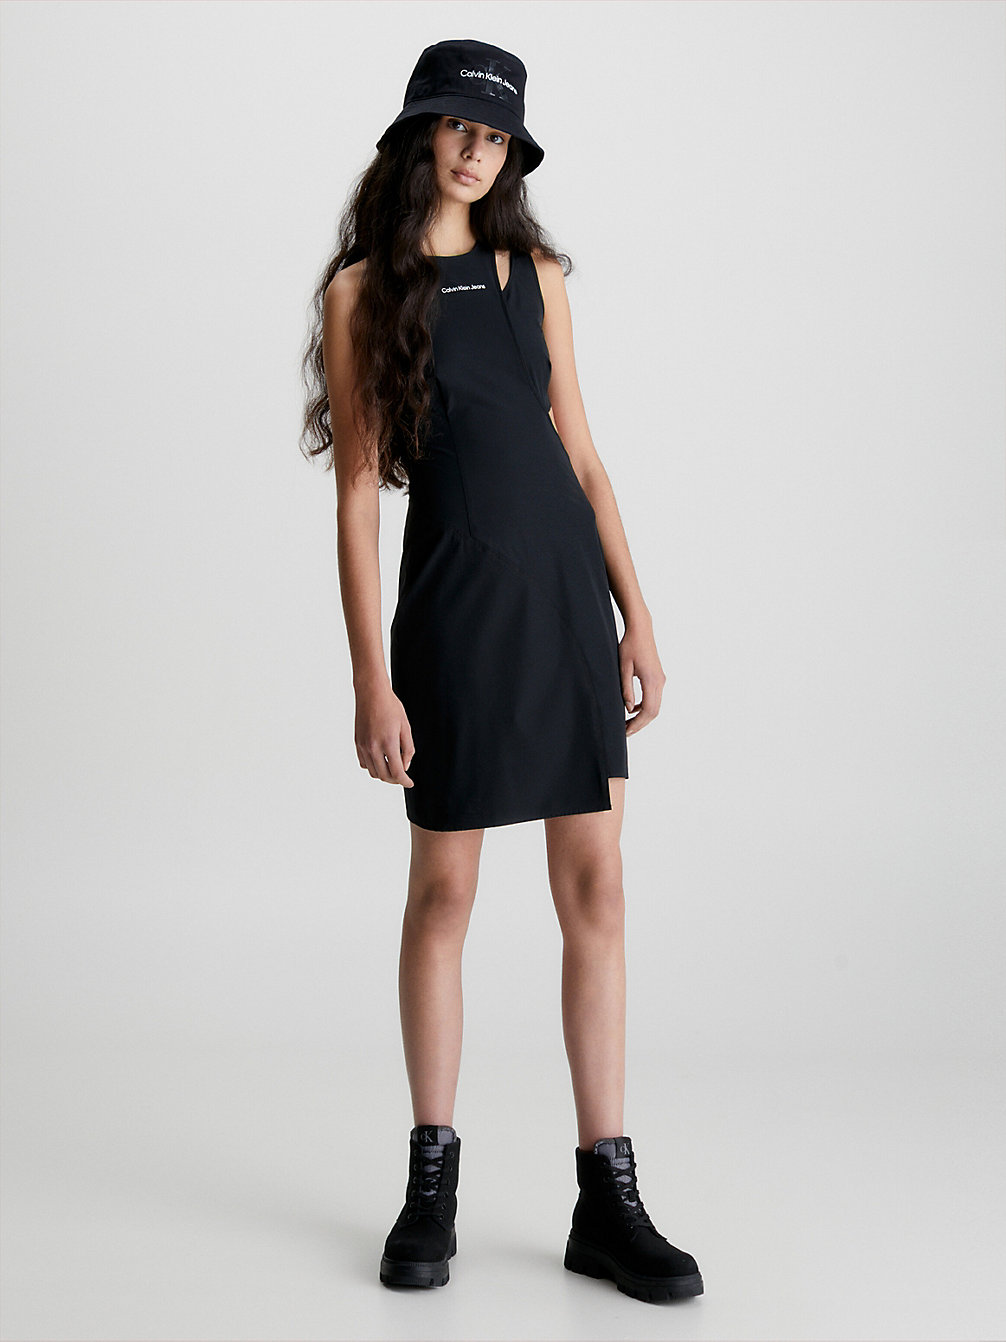 CK BLACK > Dopasowana Asymetryczna Sukienka Z Wycięciami > undefined Kobiety - Calvin Klein